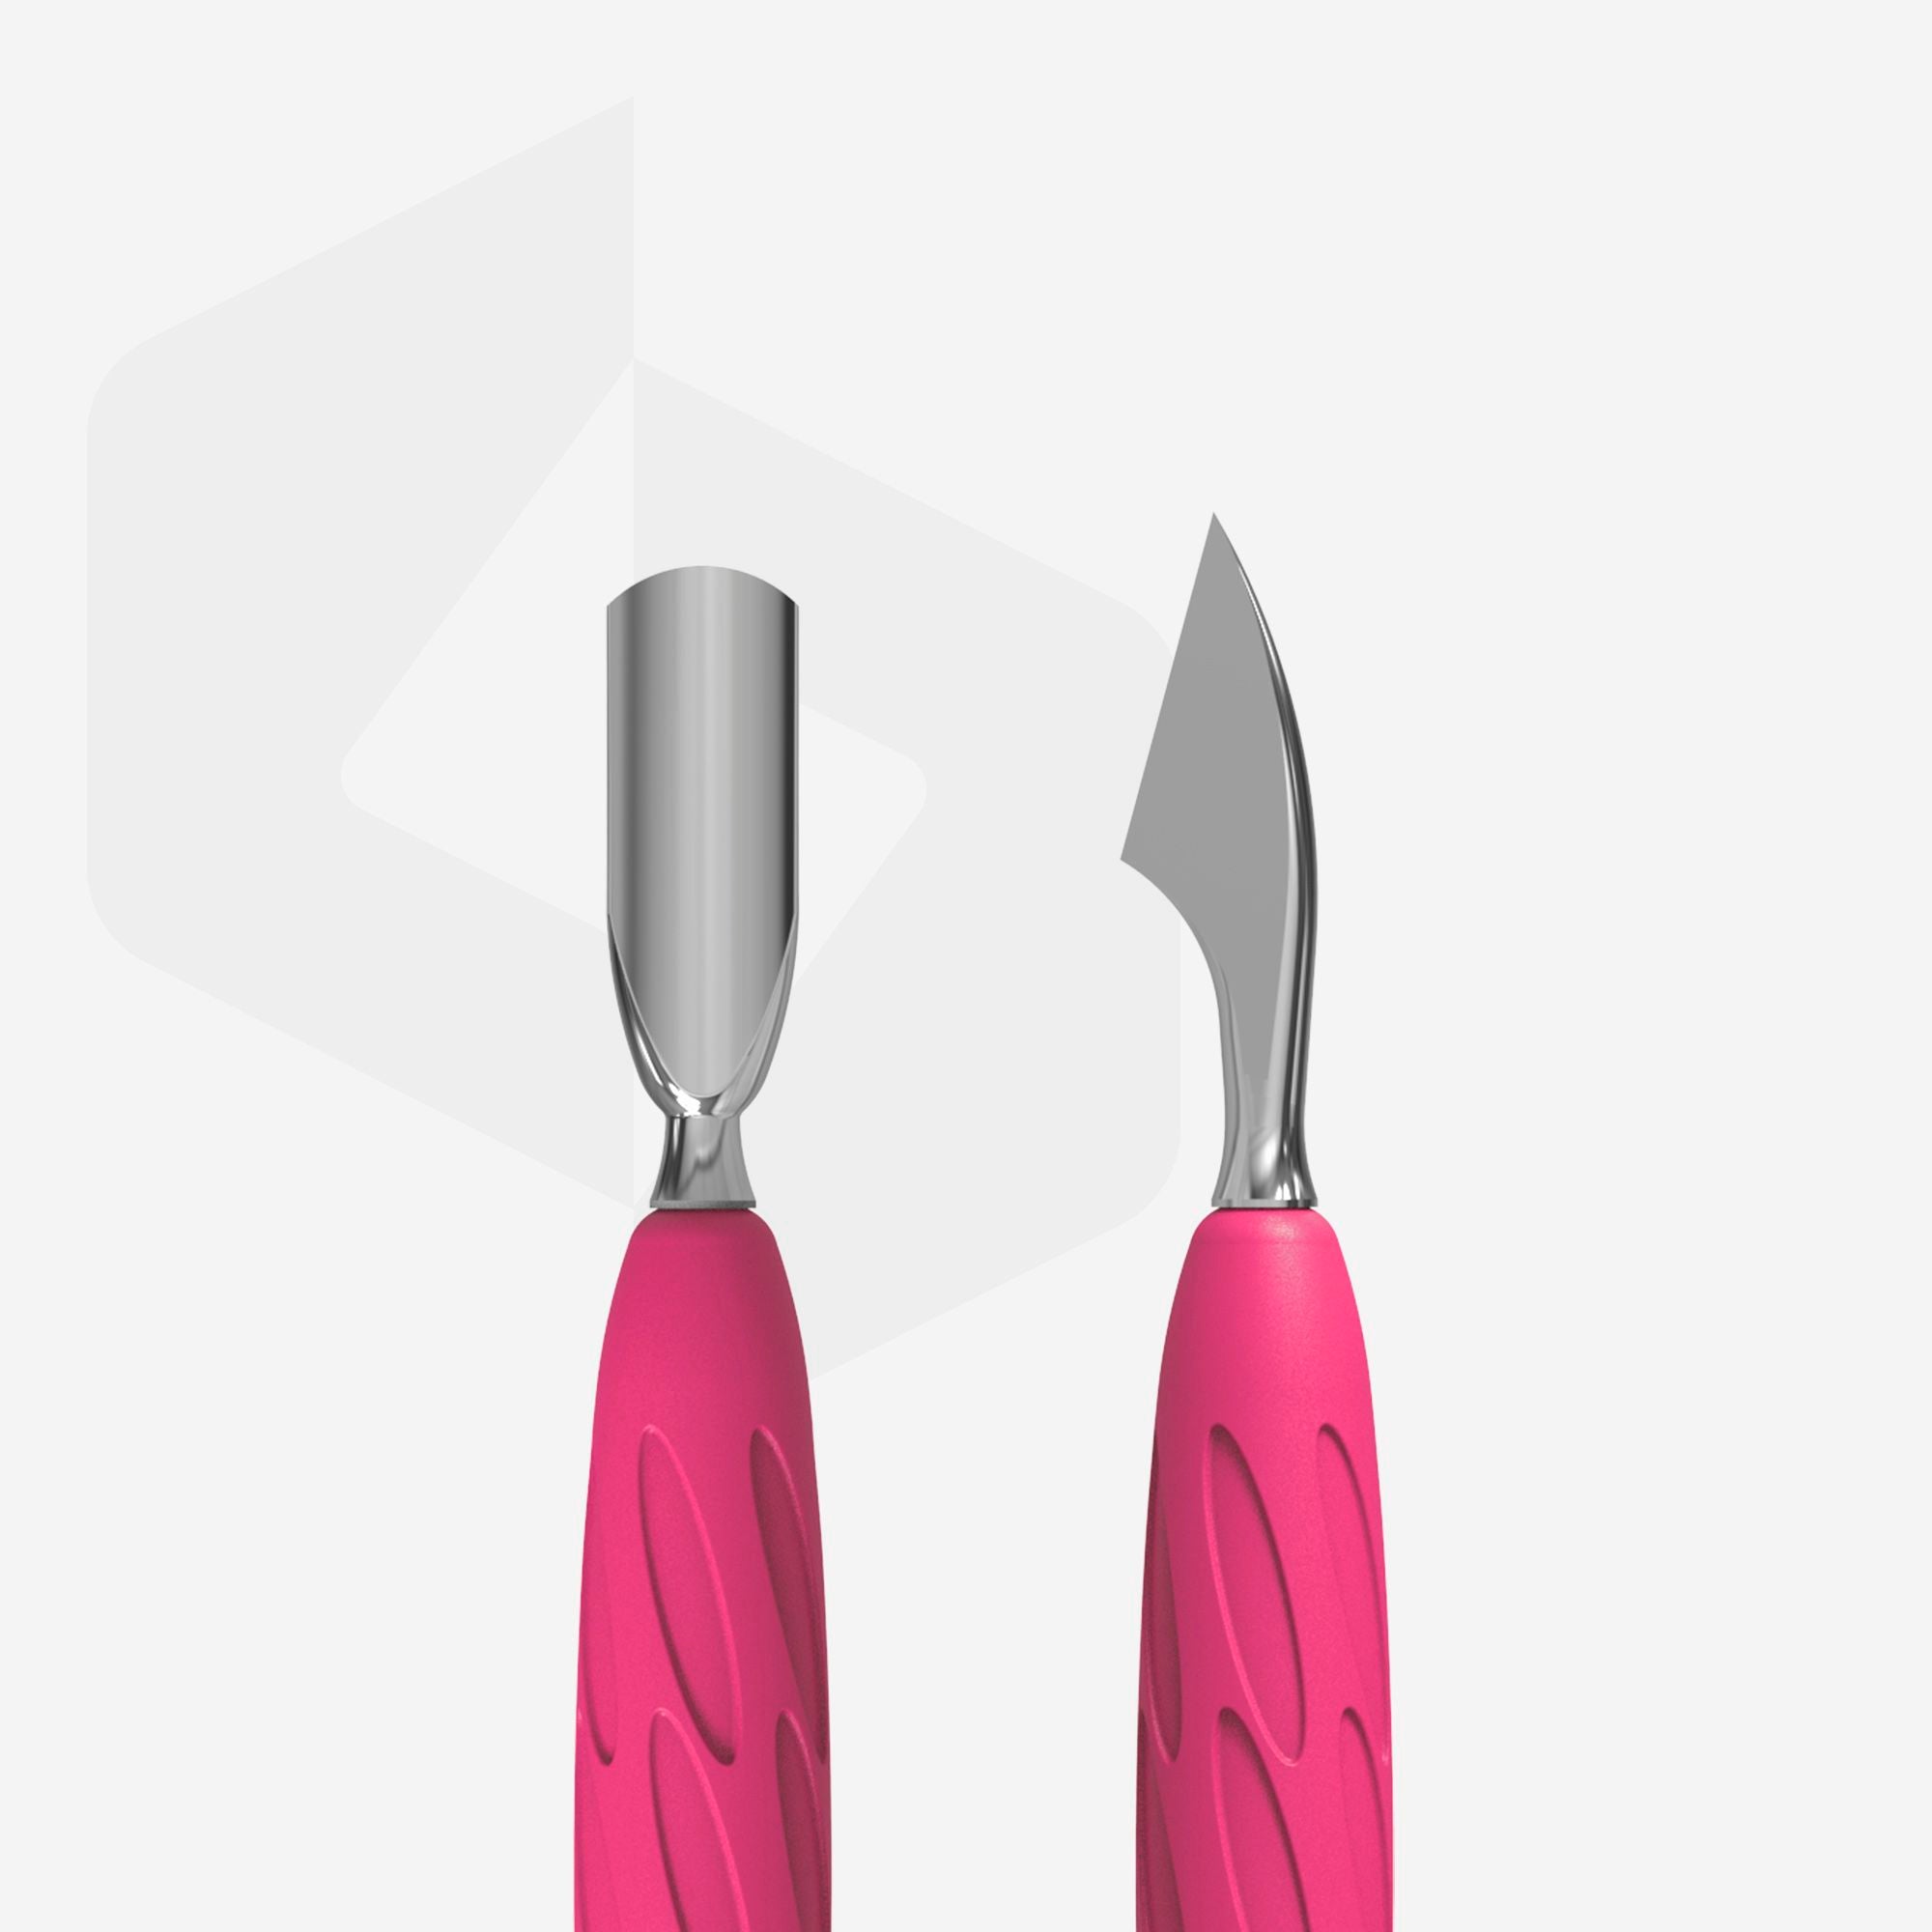 STALEKS Manicure pusher with silicone handle “Gummy” UNIQ 10 TYPE 3 (narrow rounded pusher + hatchet)  PQ-10/3